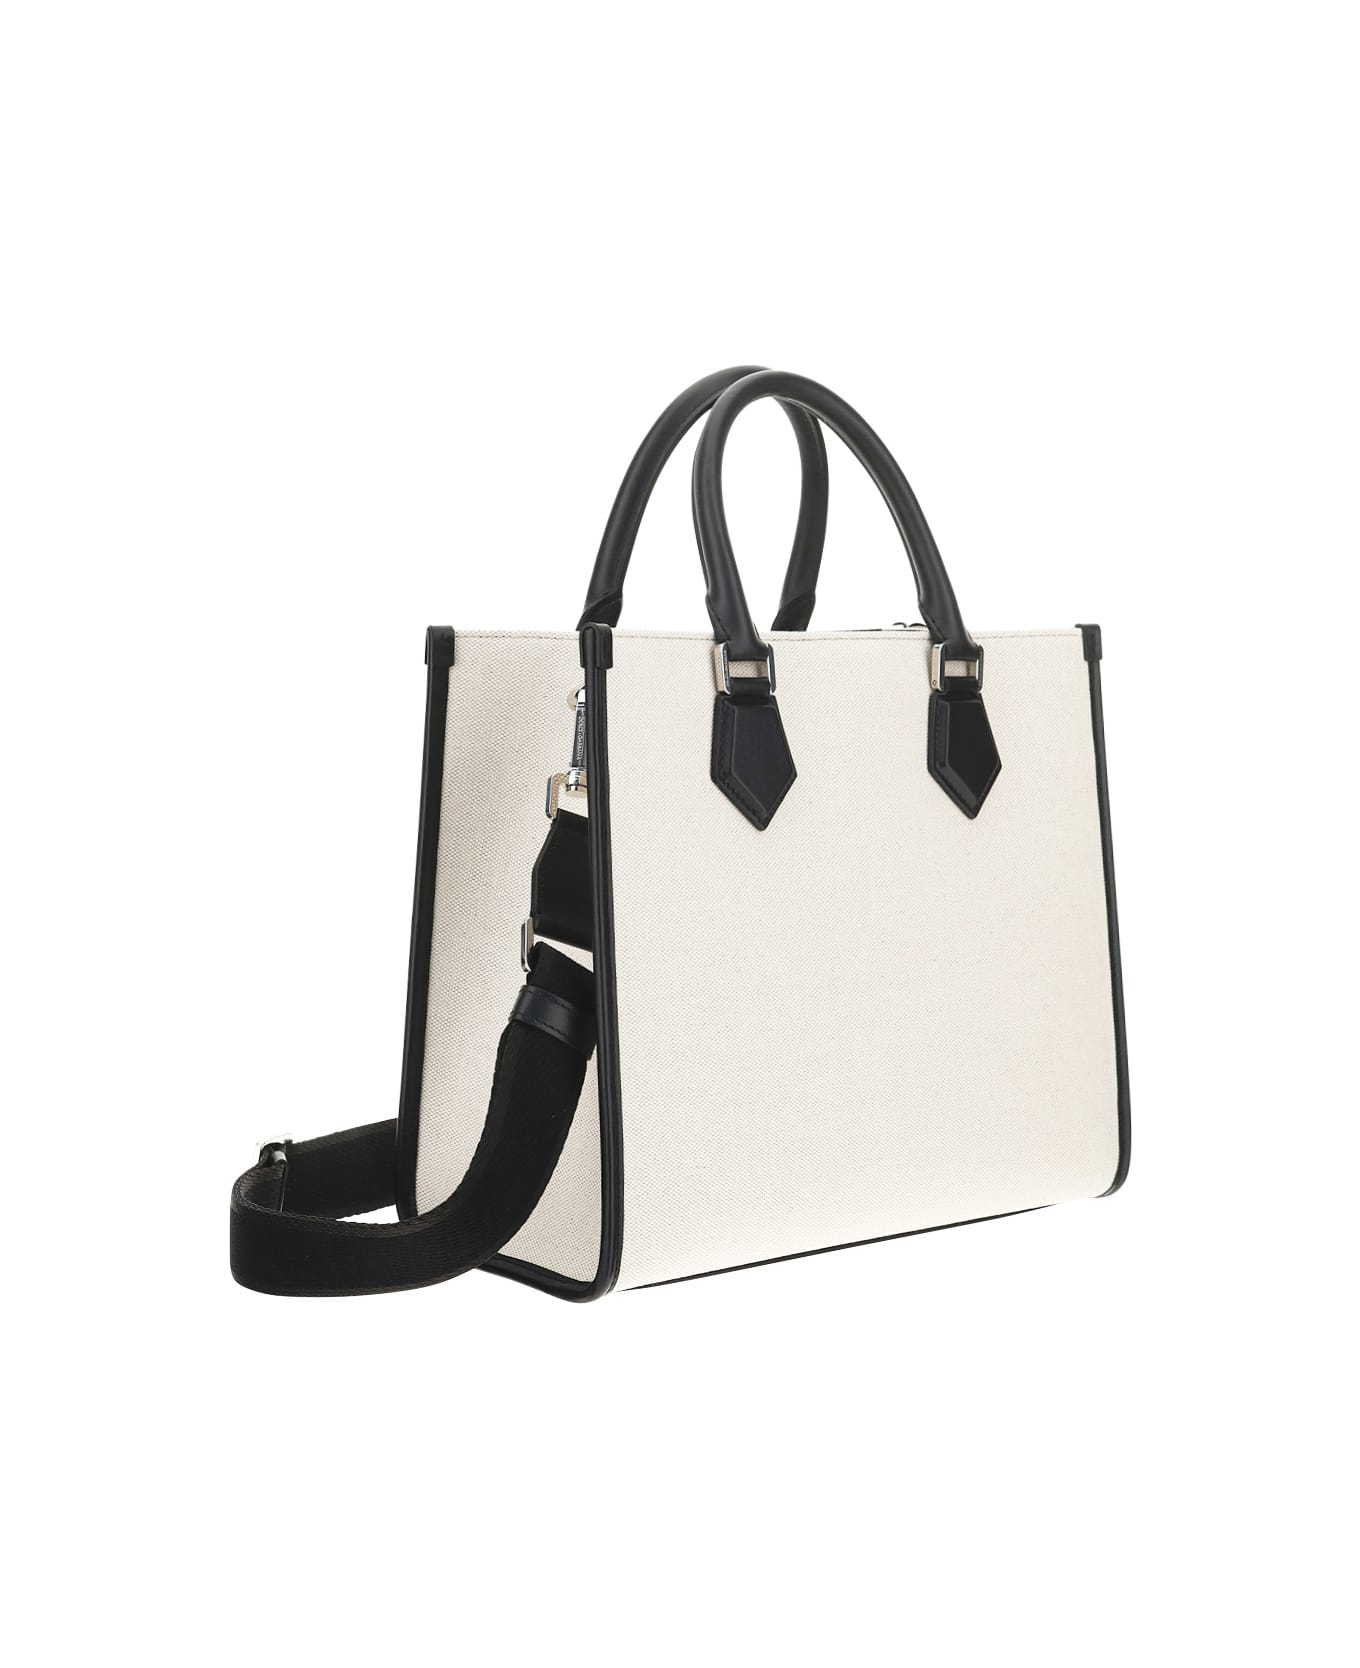 Dolce & Gabbana Shopping Bag - Bianco